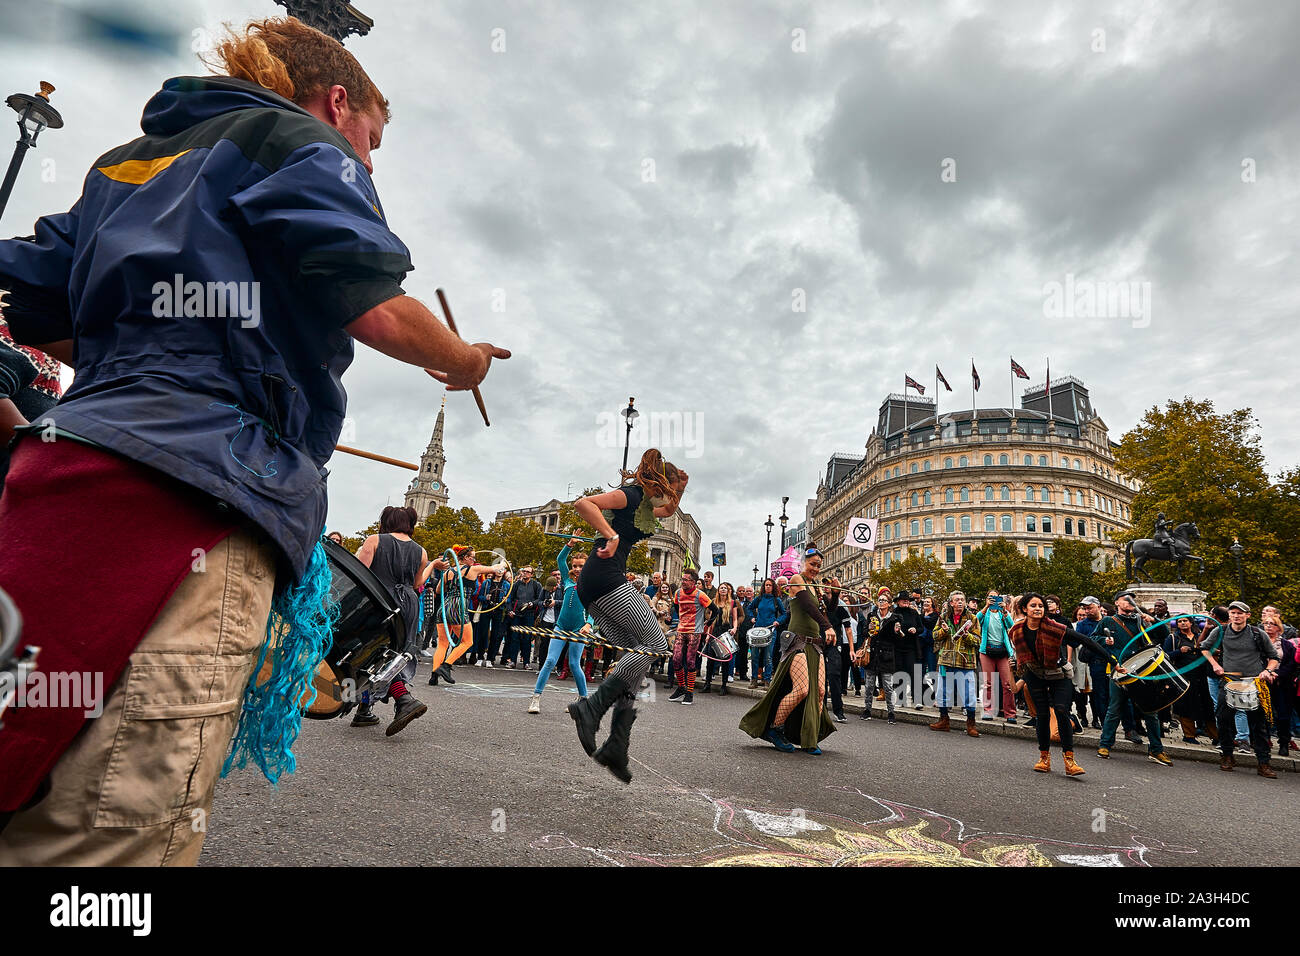 Londres, Reino Unido - Oct 8, 2019: Hula-hoop danzantes hacen una pantalla improvisada en el segundo día de una ocupación de Trafalgar Square por activistas de extinción rebelión. Foto de stock